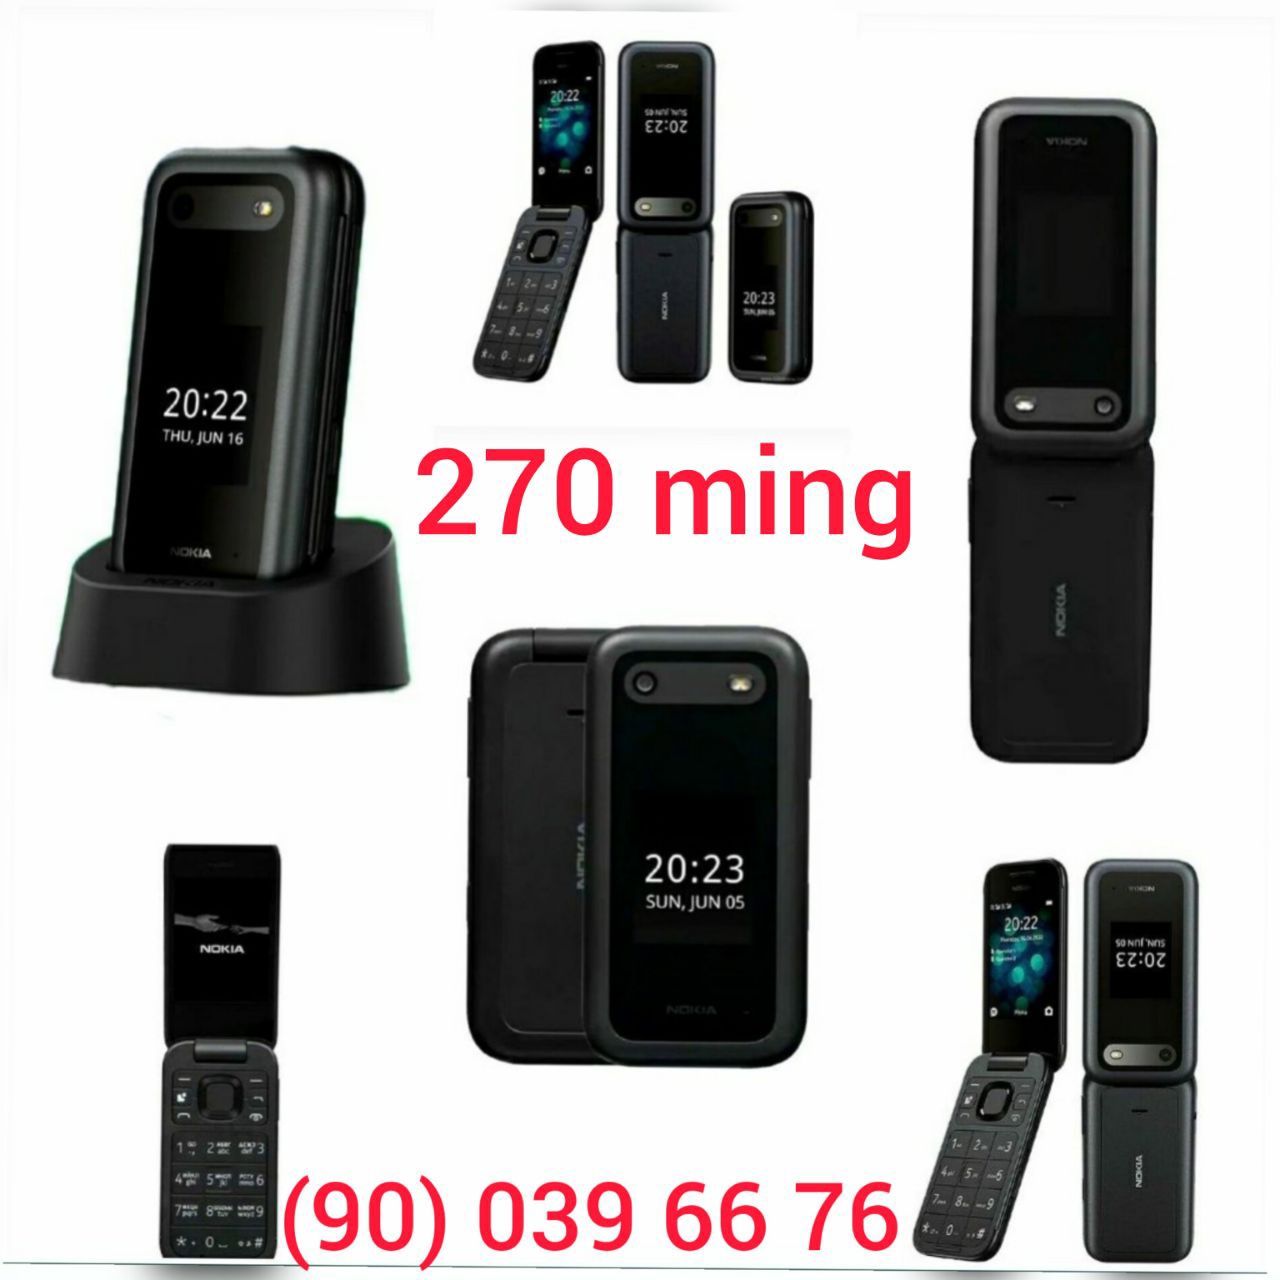 Gusto 3 (B311V) Samsung, Nokia 2720 flip, Nokia  2660 flip, Yengi, Gsm